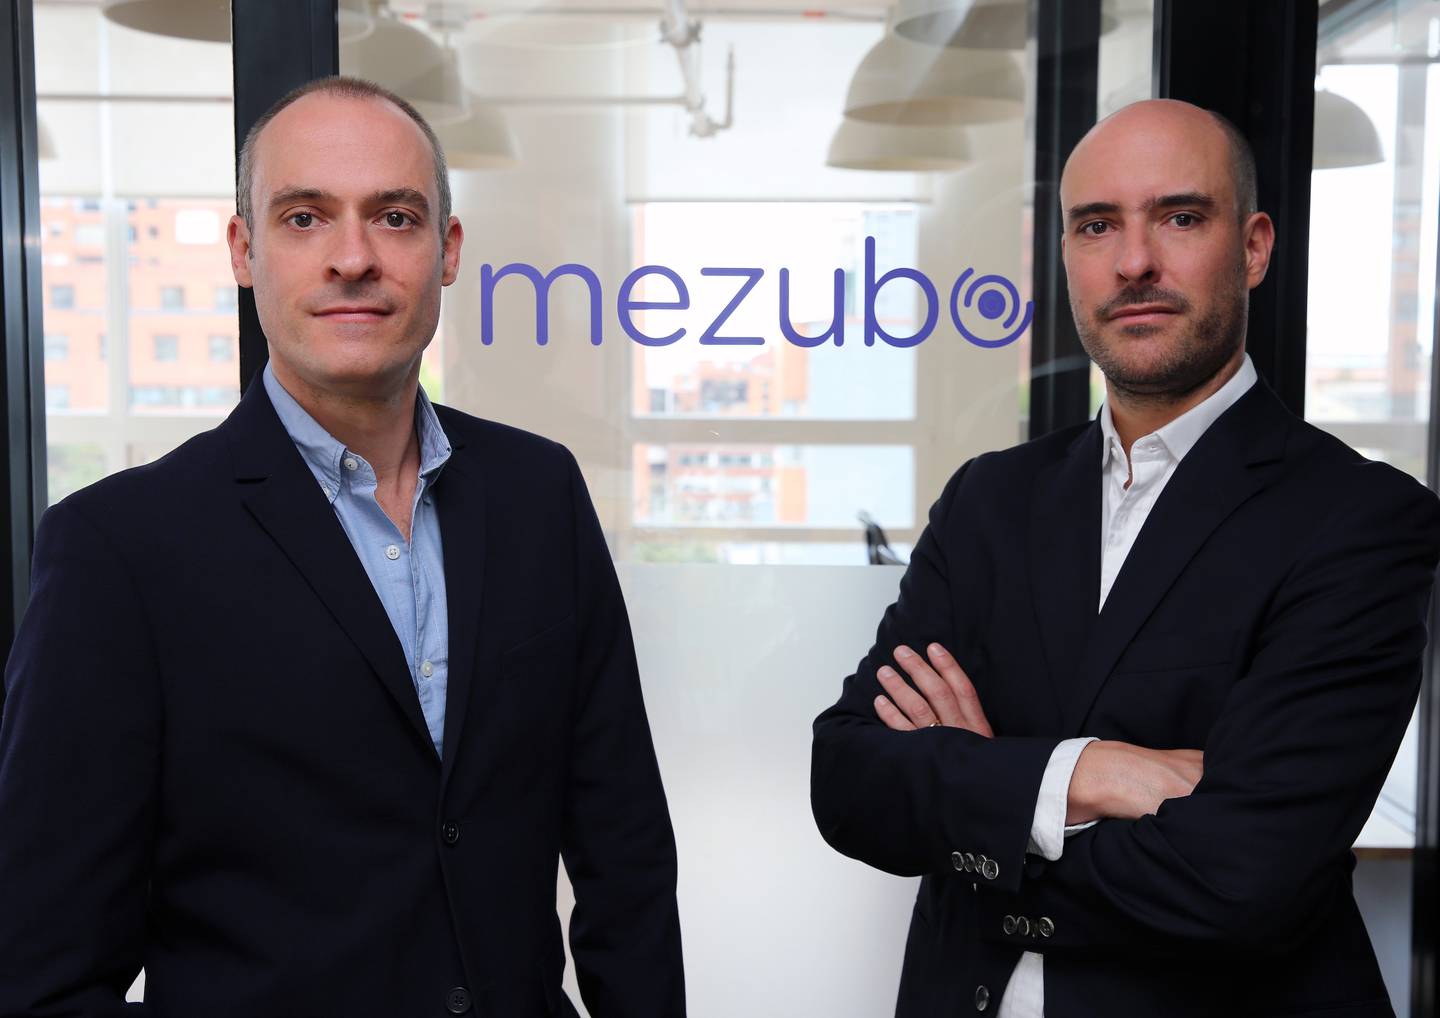 Los fundadores de Mezubo son Nicolas y Juan Sebastián Pardo, dos hermanos con experiencia en emprendimiento, finanzas y tecnología